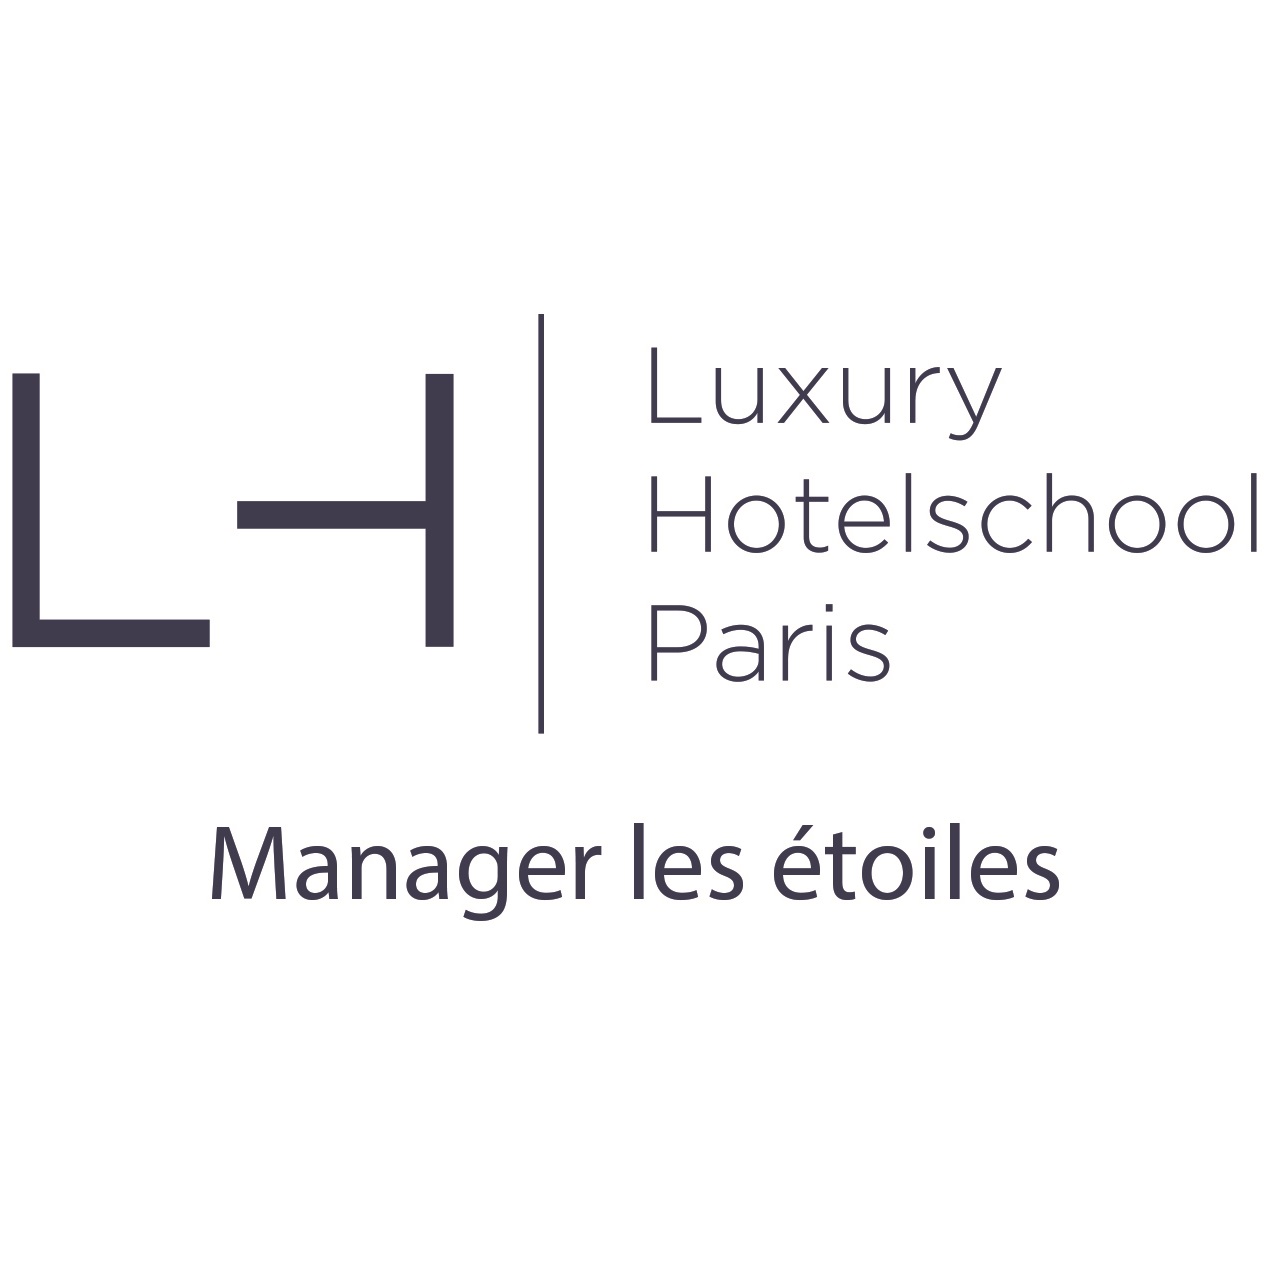 Luxury Hotelschool Paris - Ecole hôtelière / Management hotelier / Luxe / Management du luxe